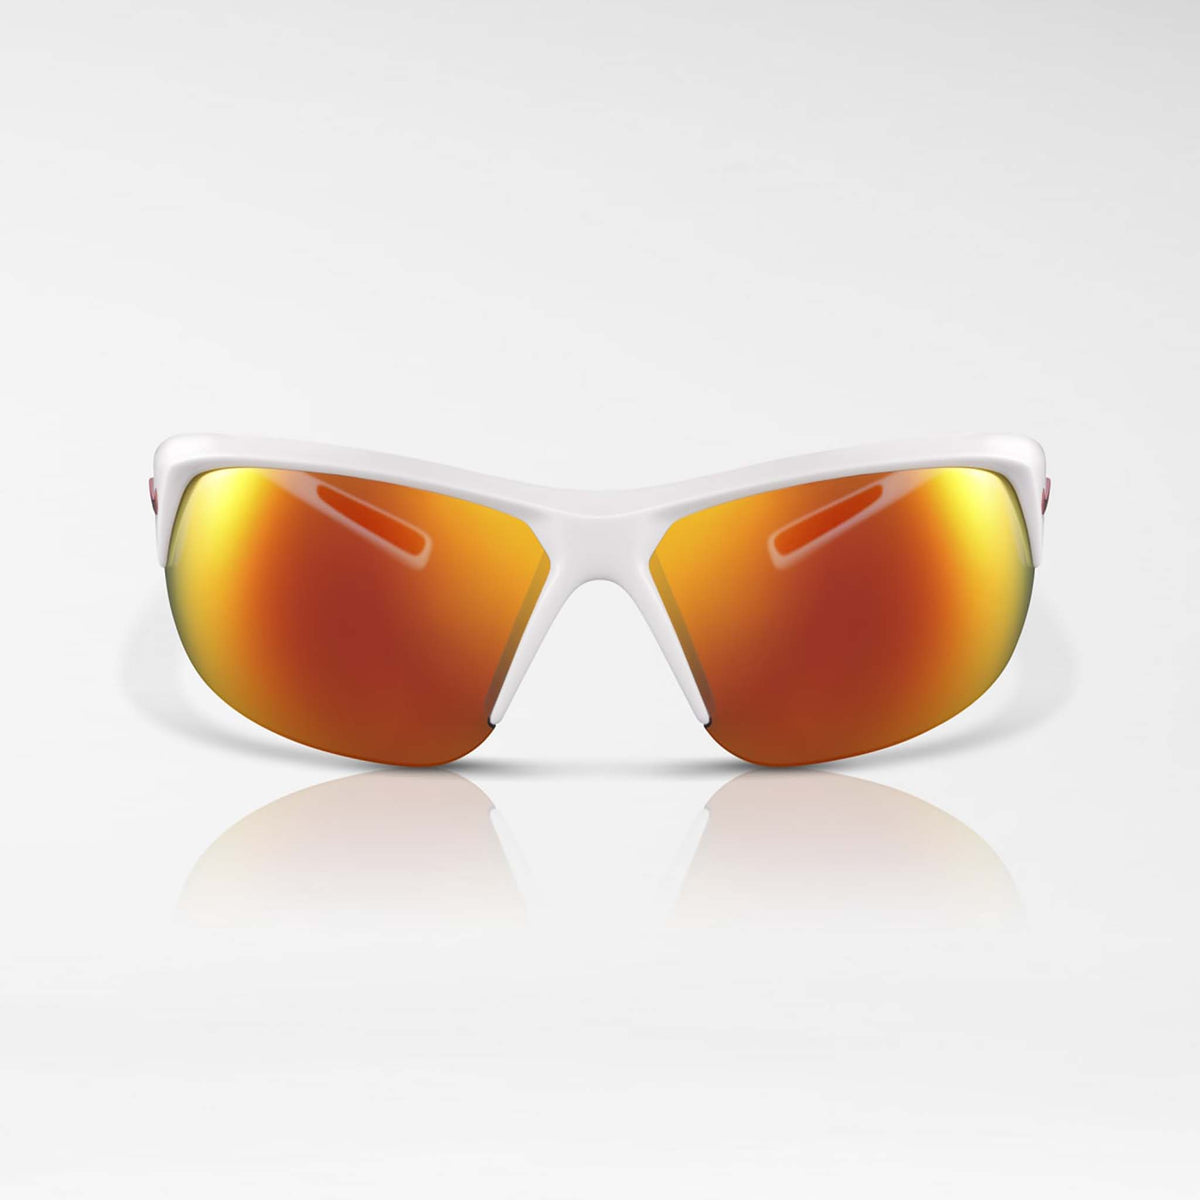 Nike Skylon Ace lunettes de soleil sport blanc gris rouge miroir face